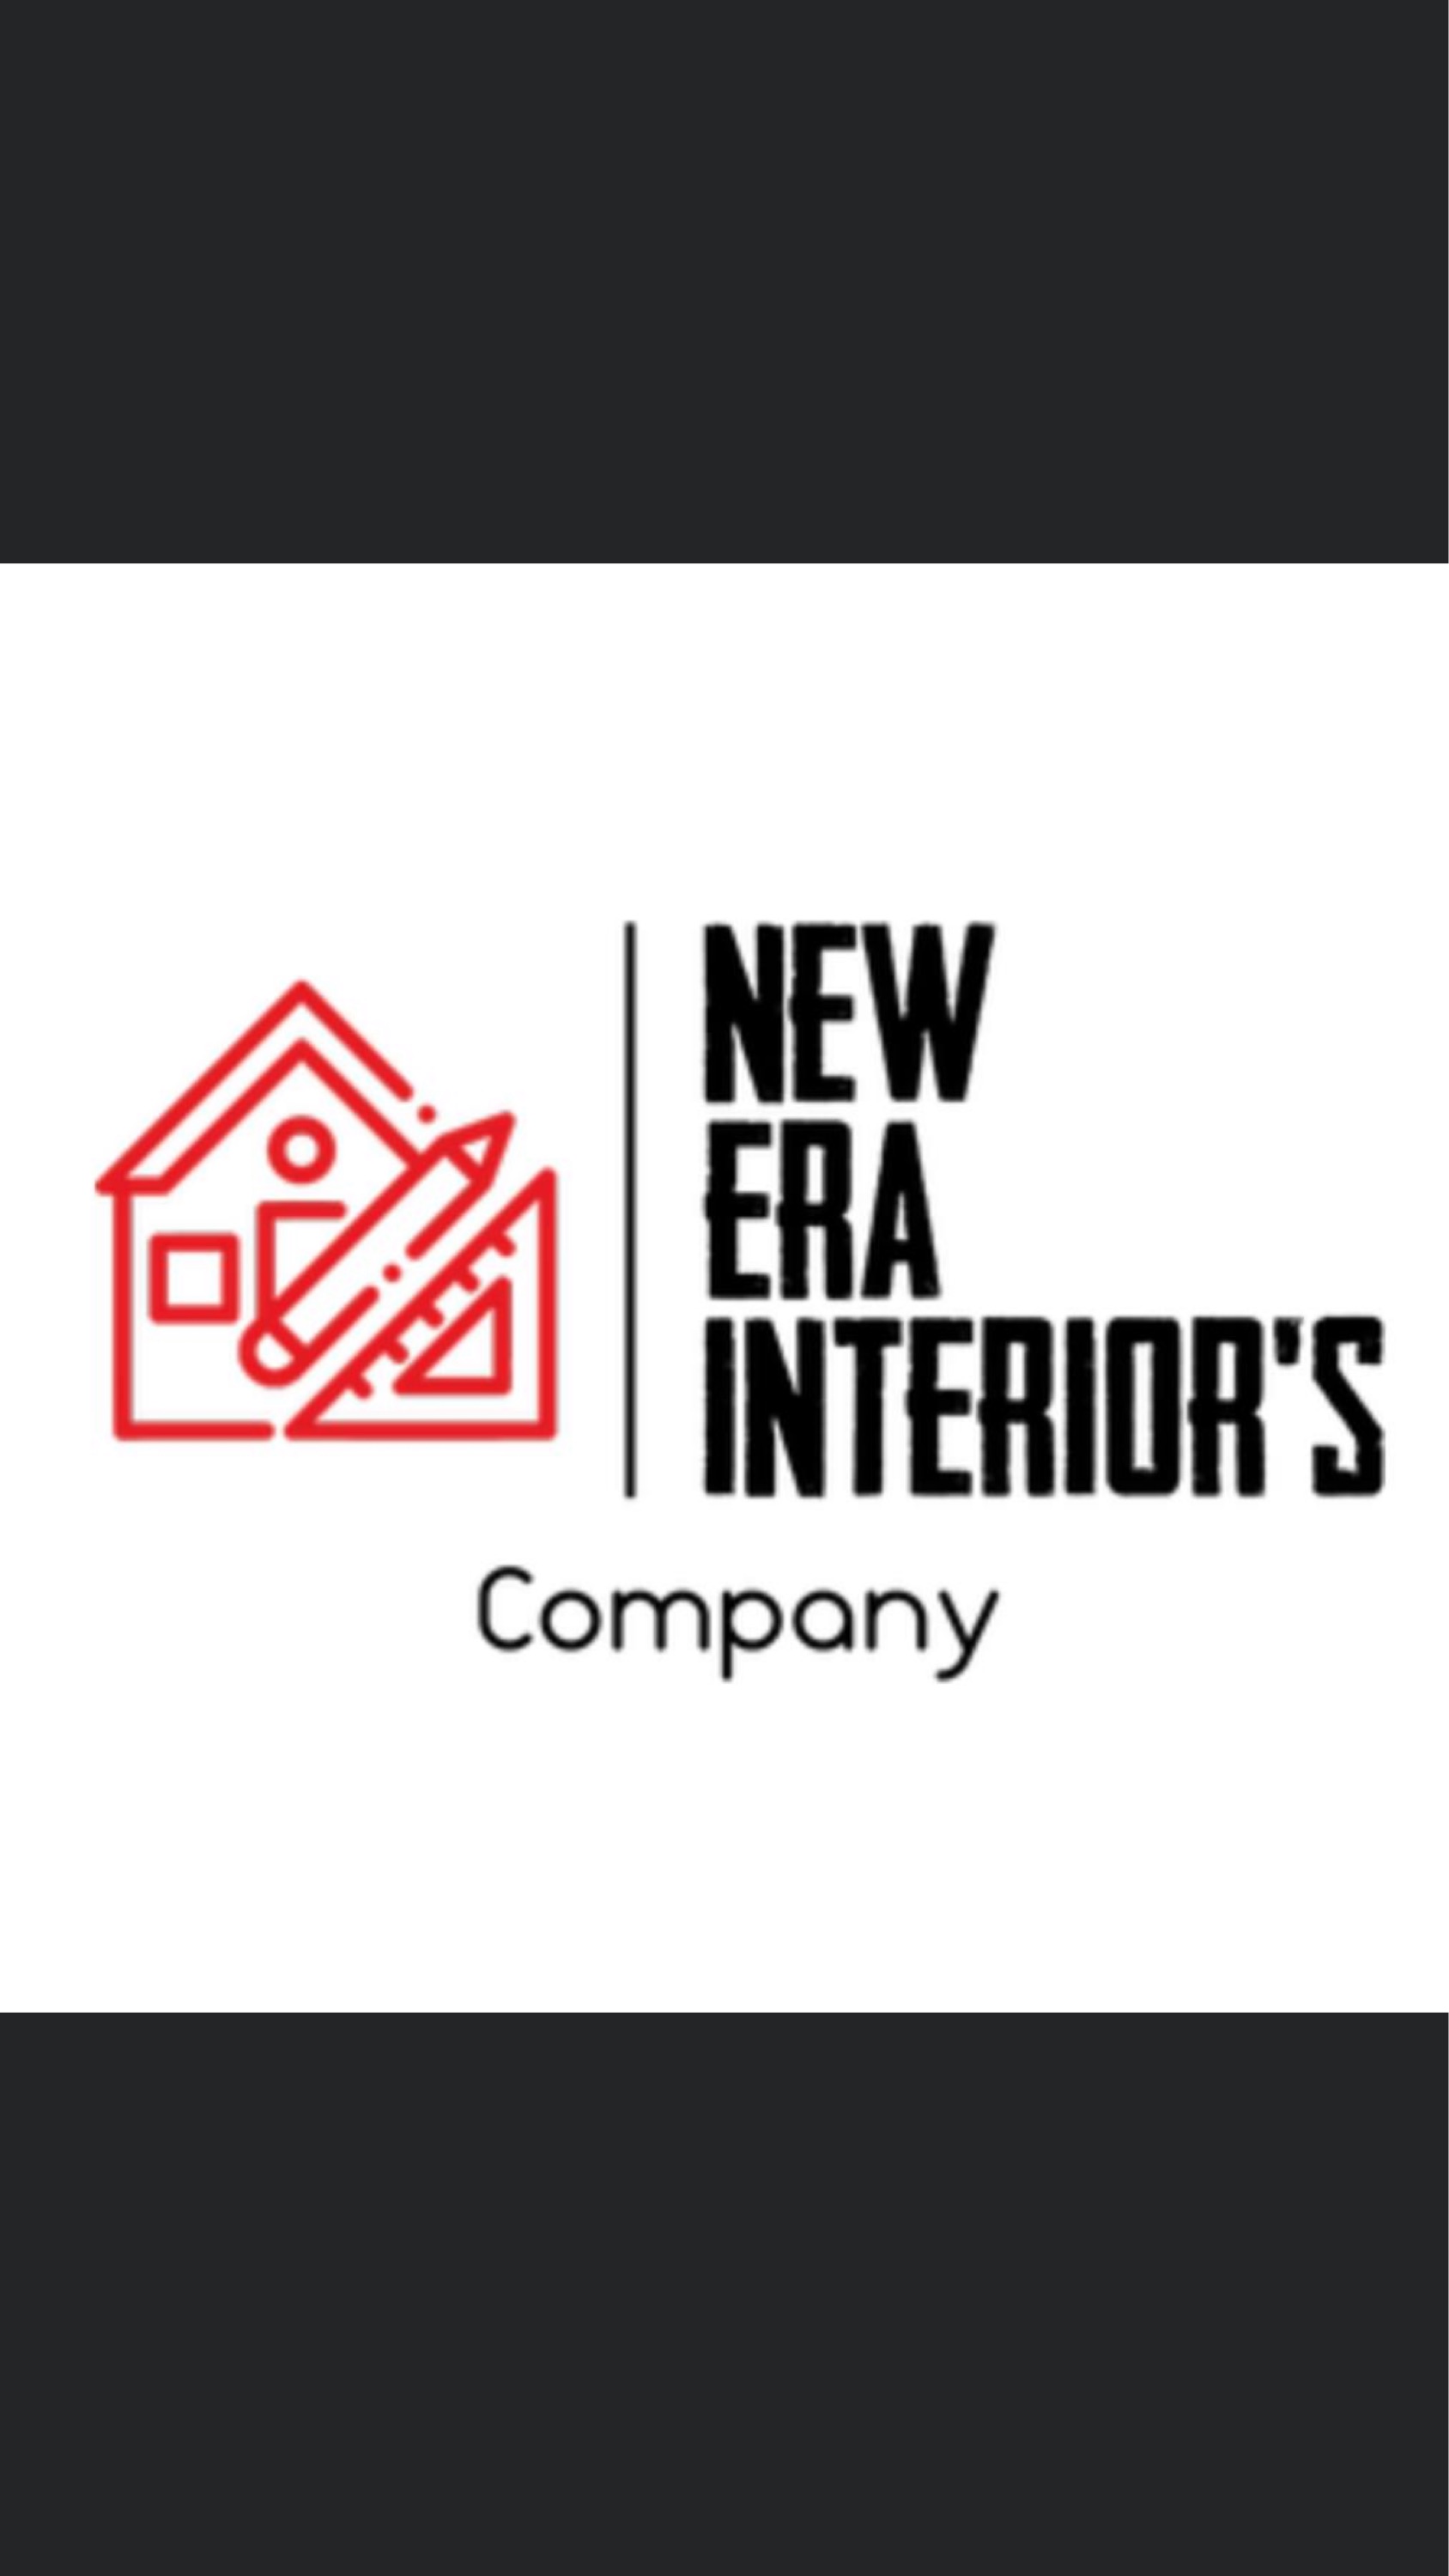 New Era Interiors Company Logo